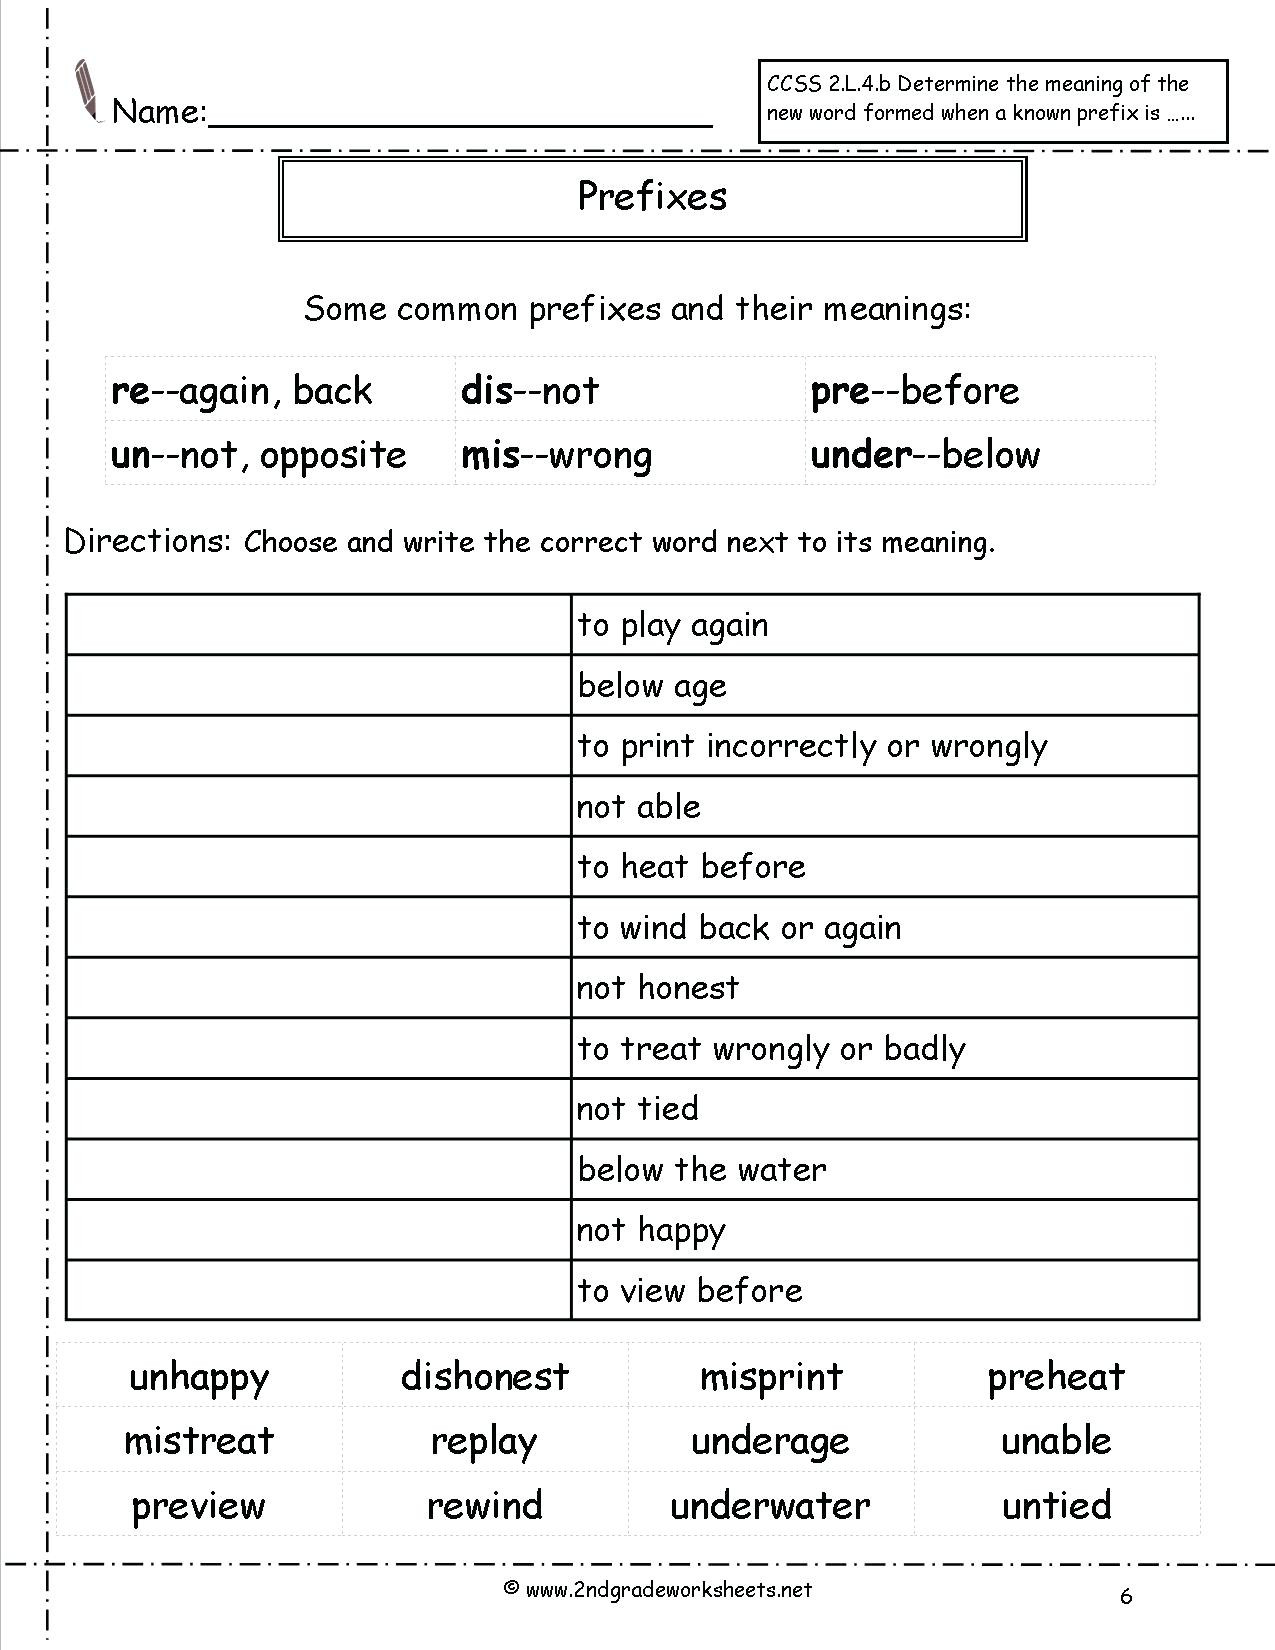 Prefixes Worksheets 3rd Grade 3rd Grade Prefixes and Suffixes Worksheets Whats the Prefix